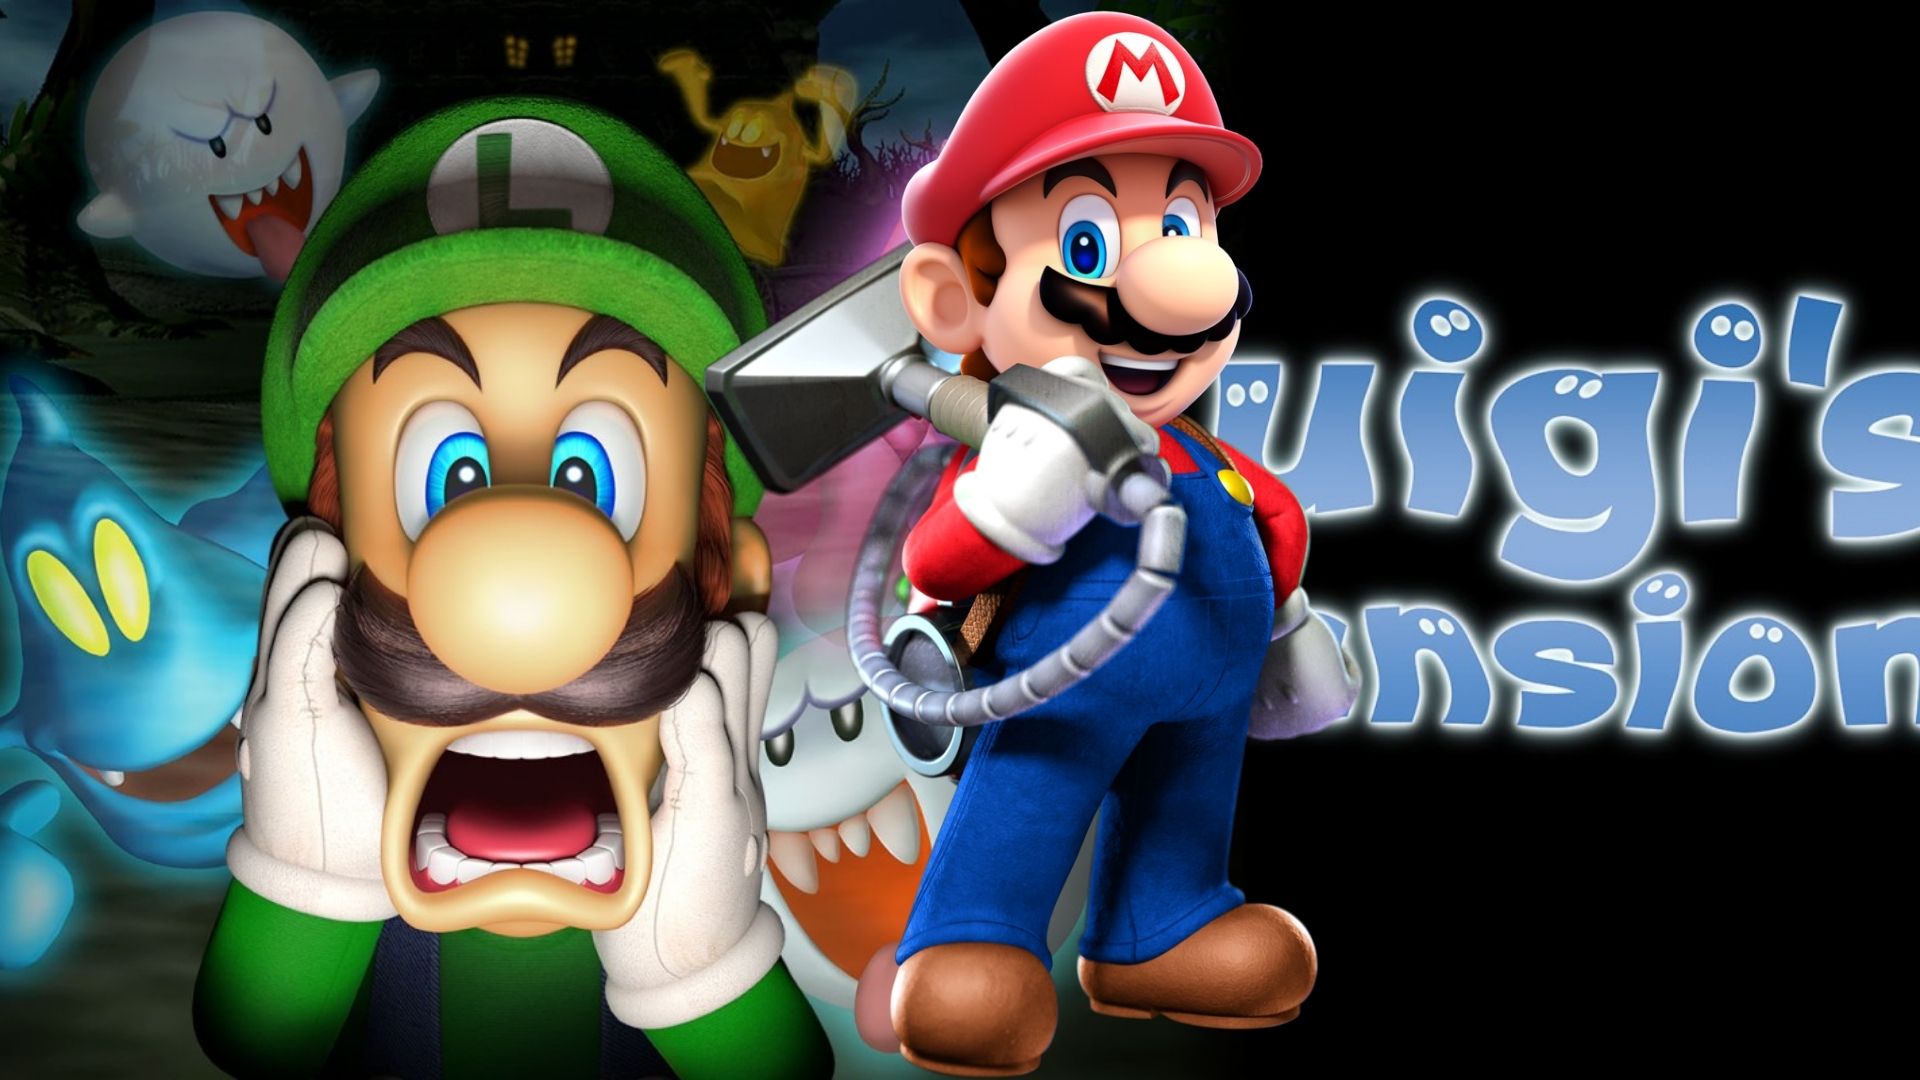 Mario Takes Over Luigi's Mansion in new ROM hack for GameCube emulators.